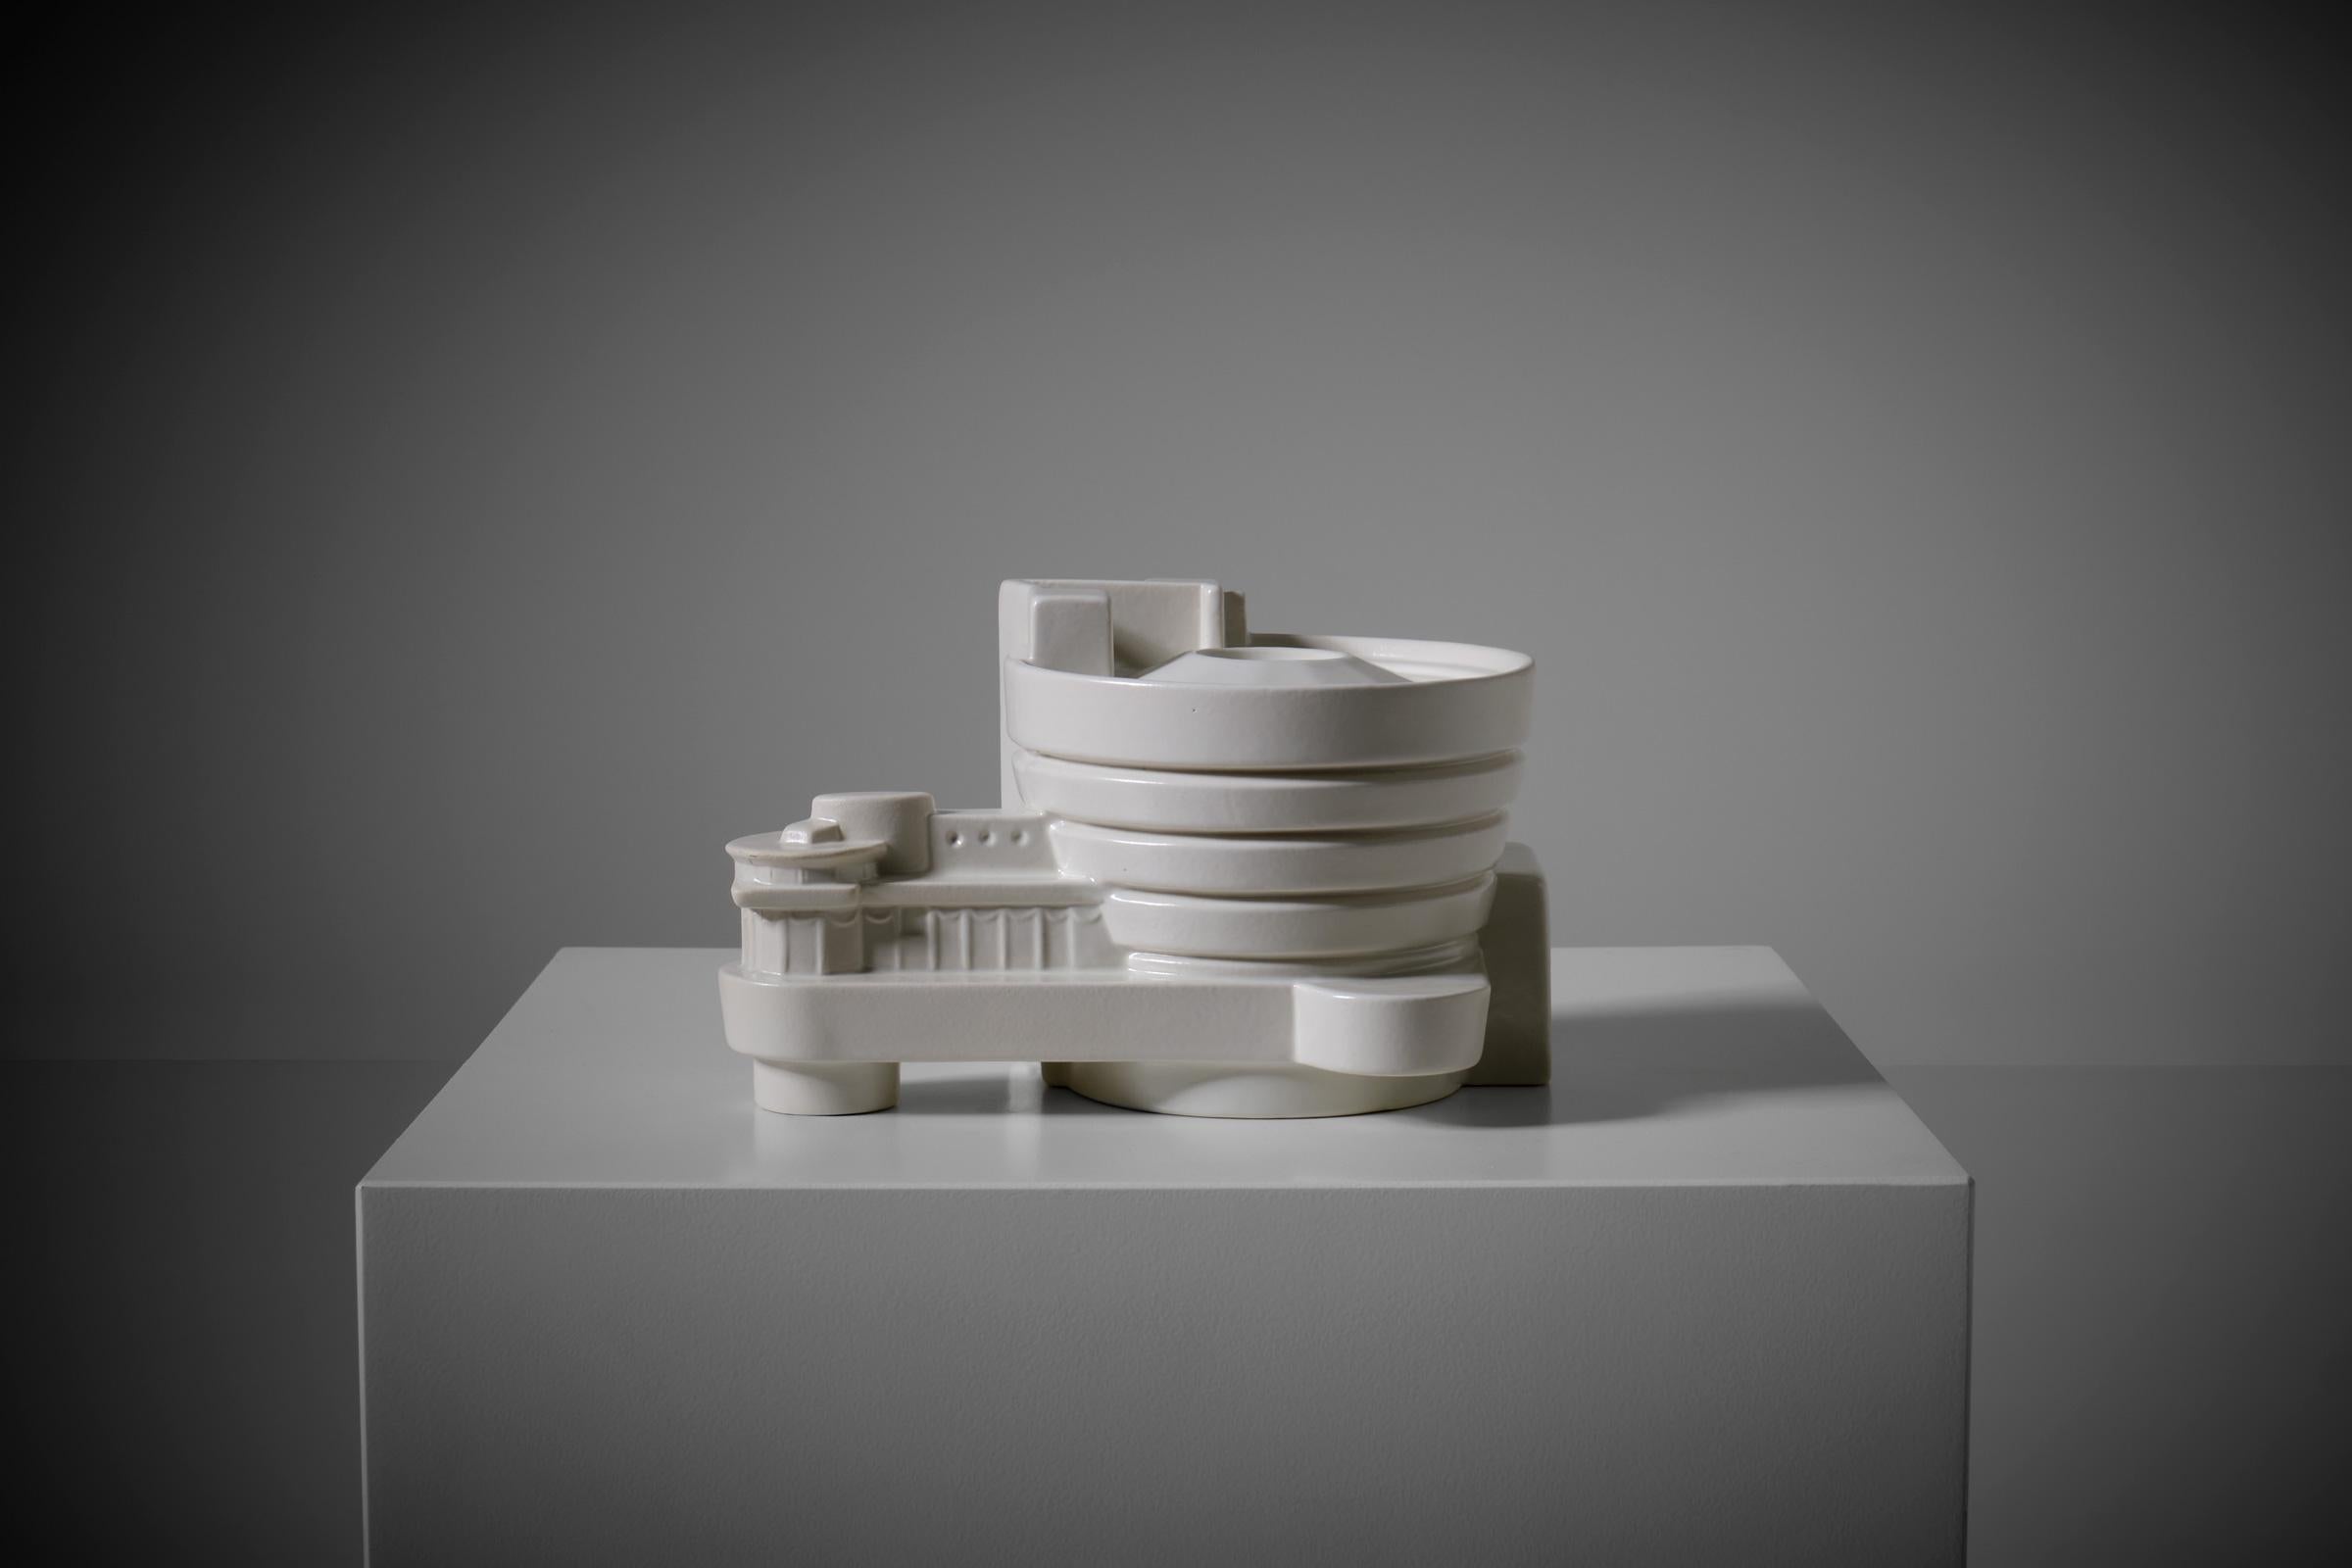 Seltene Guggenheim-Keramikskulptur von A.Ba.Co. für New Land, Italien 1970er Jahre. Das Objekt gehörte zur Kollektion Monumente